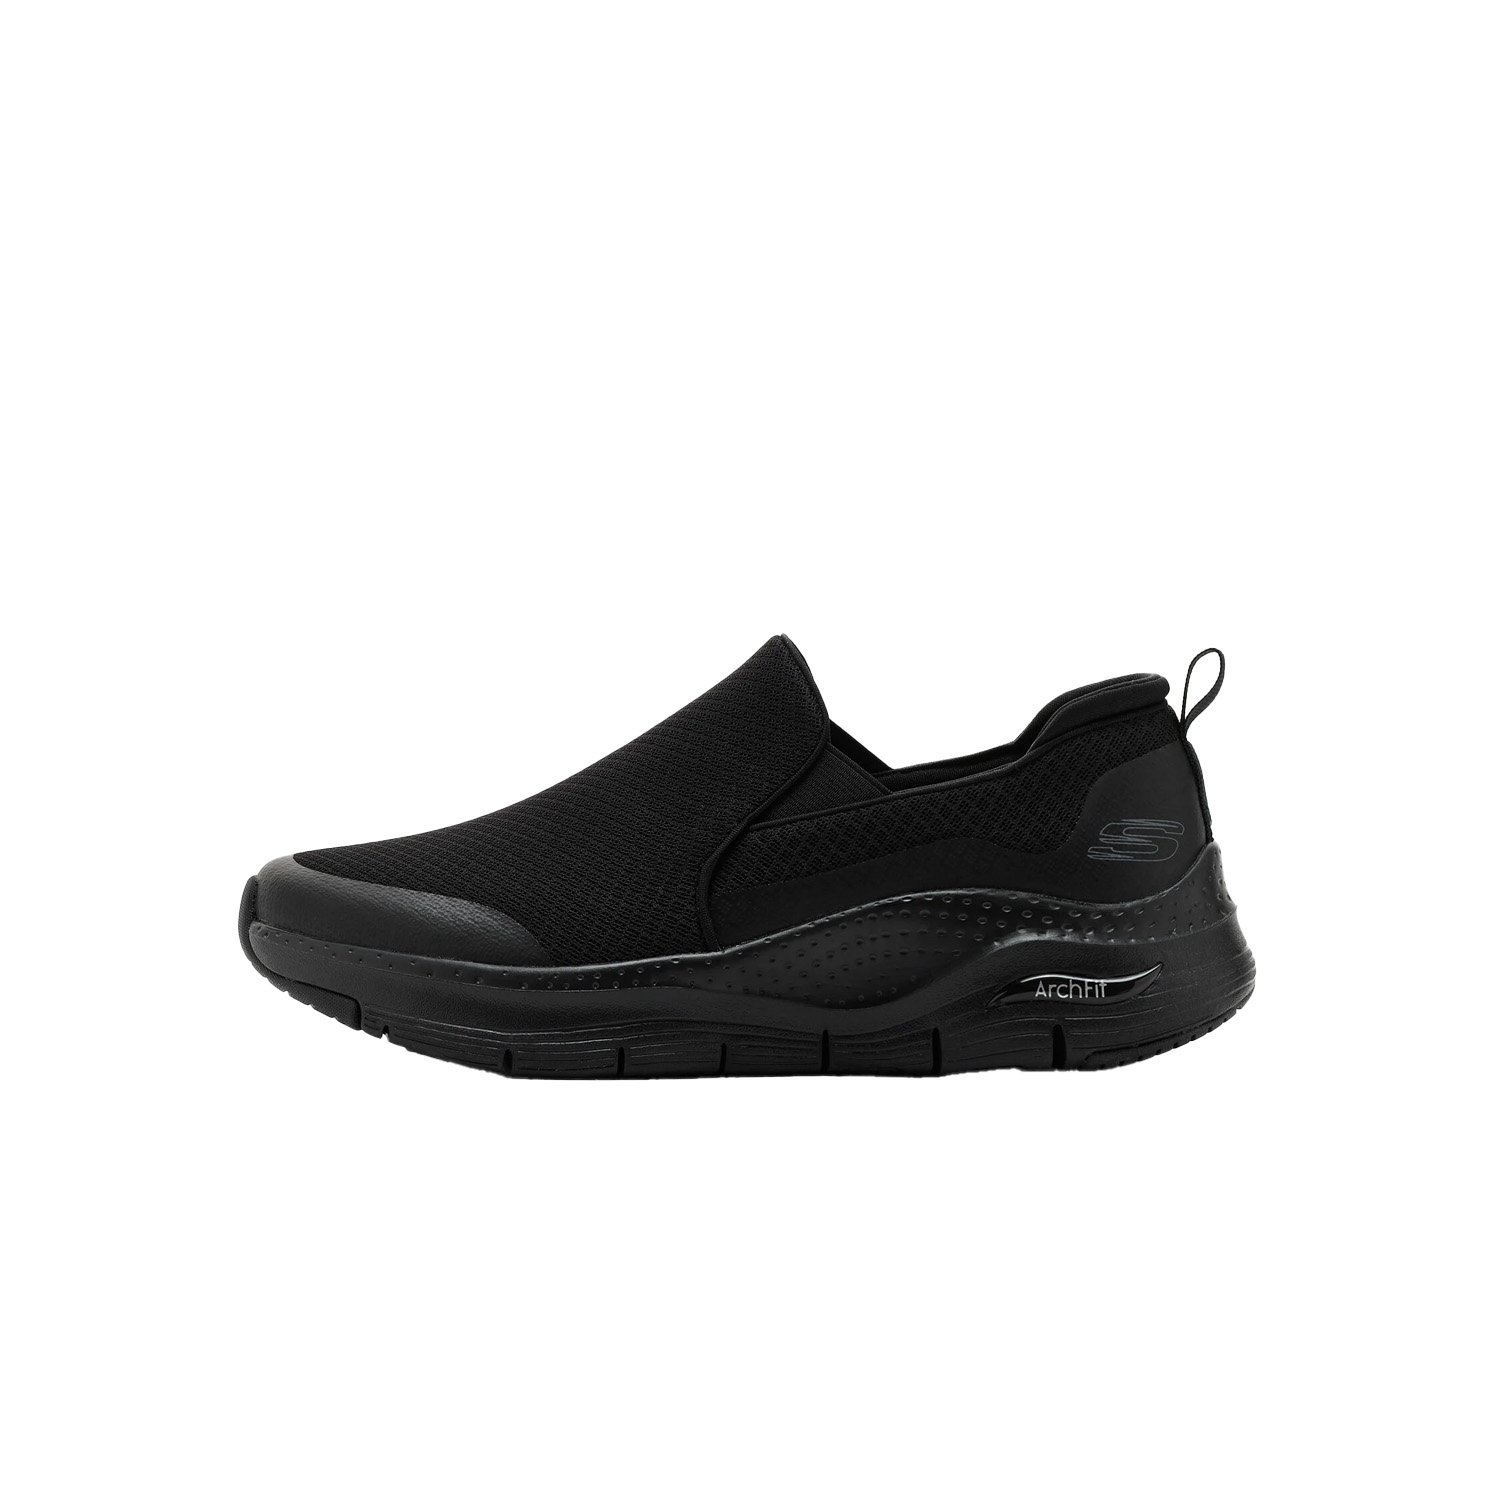 Skechers Arch Fit Erkek Ayakkabısı - Siyah - 1